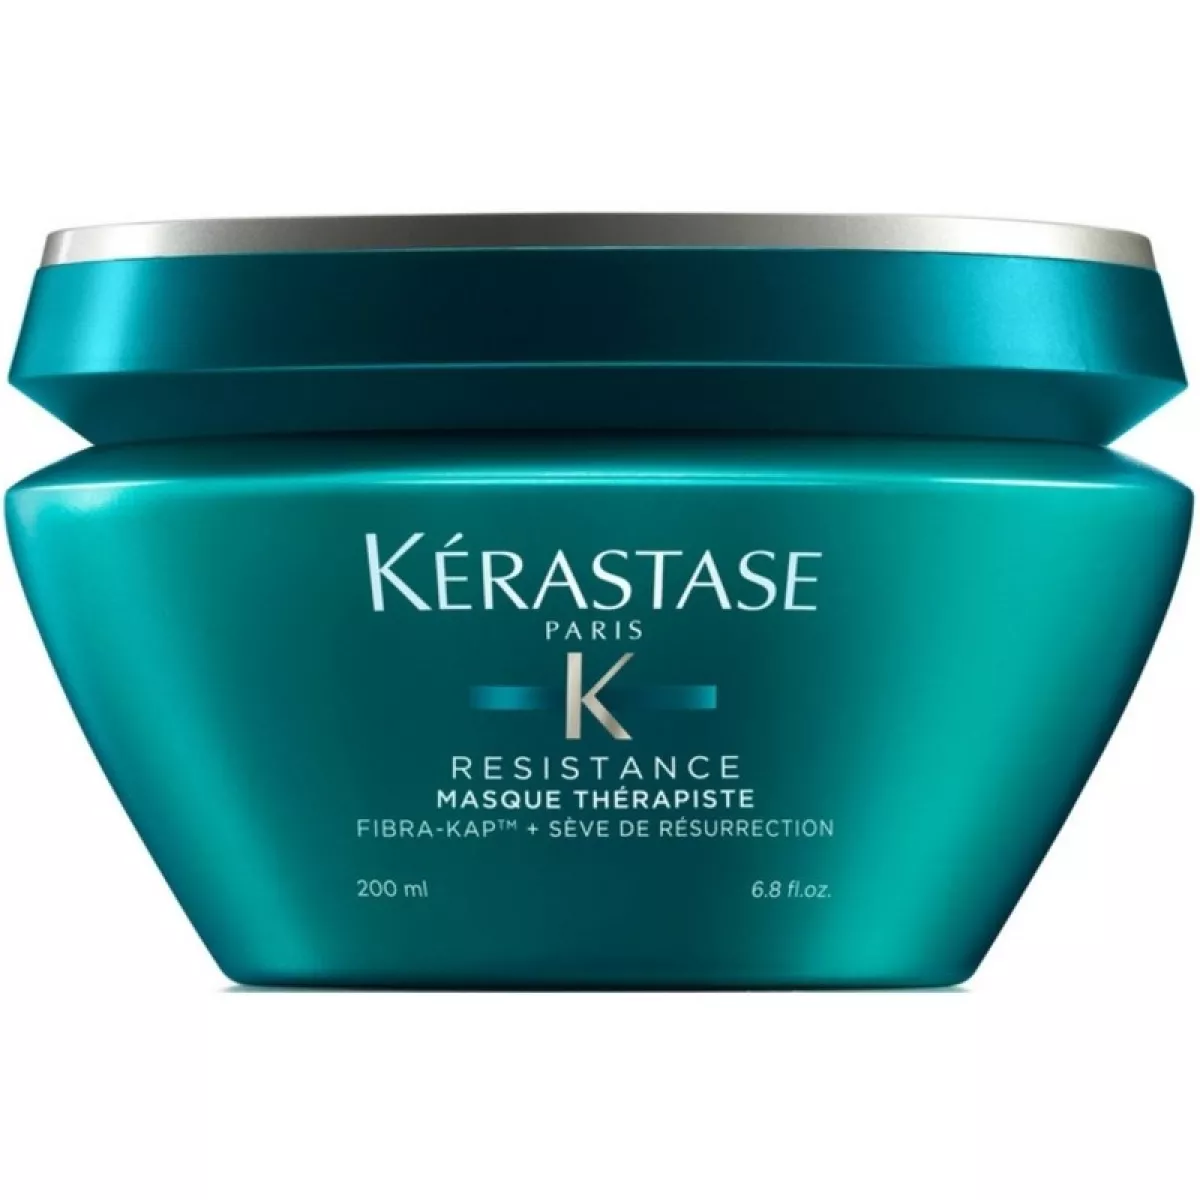 #2 - Kerastase Resistance Masque Therapiste Hair Mask 200 ml